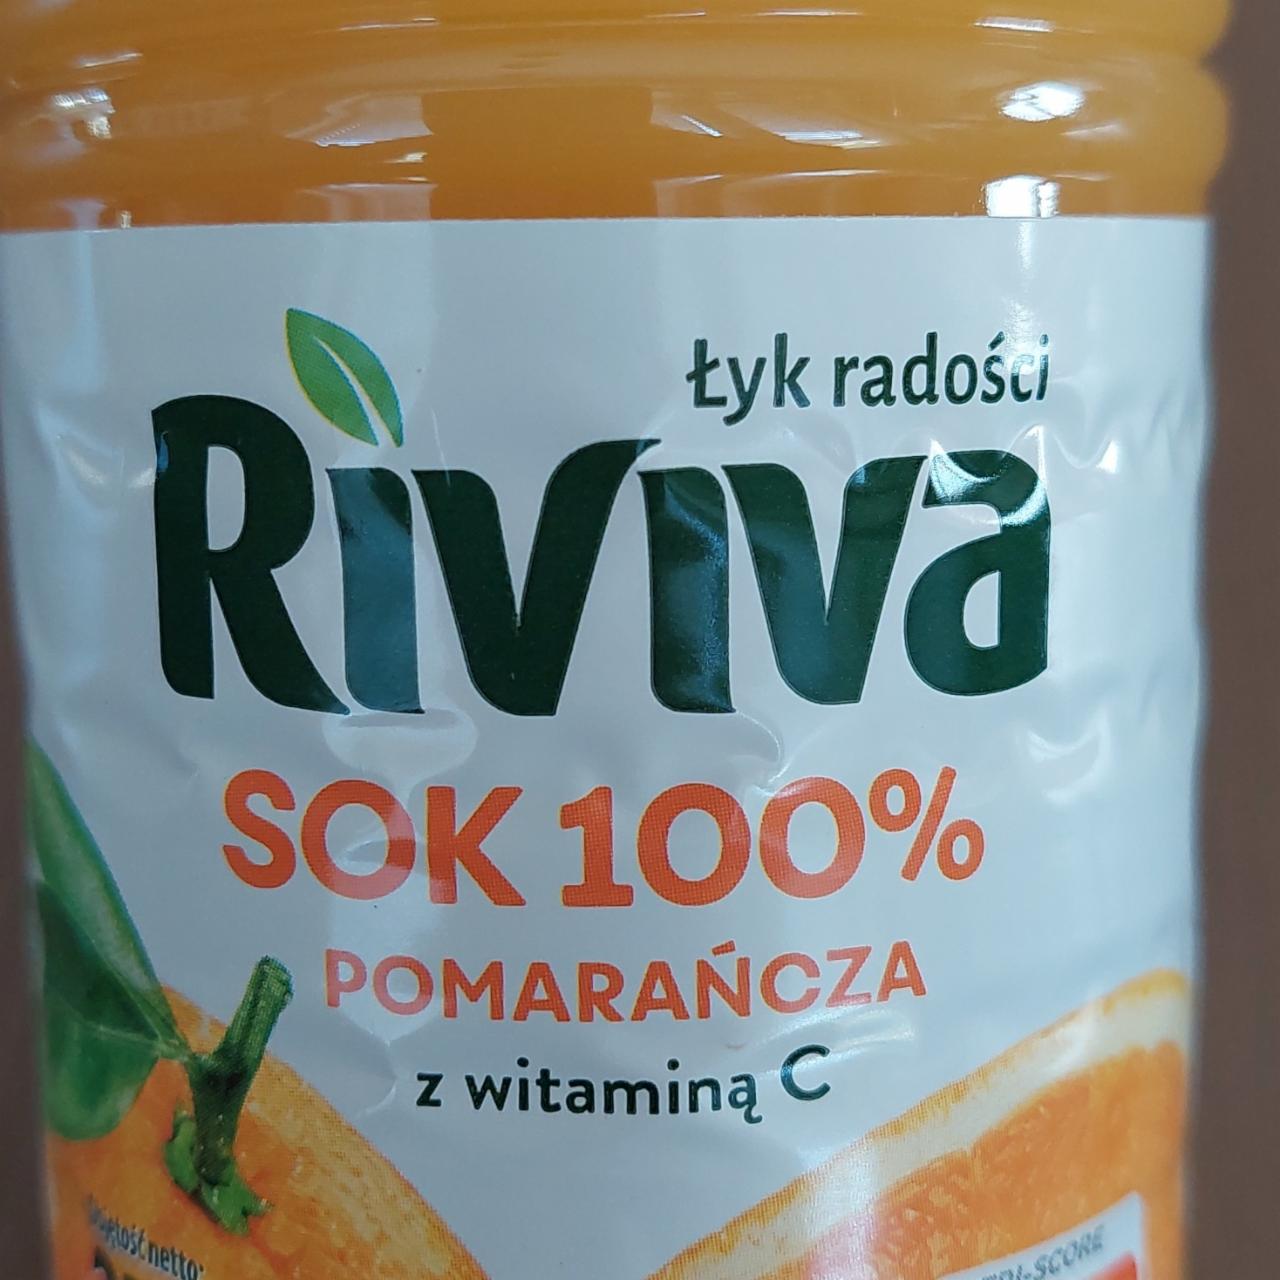 Fotografie - Sok 100% Pomarańcza z witaminą C Riviva